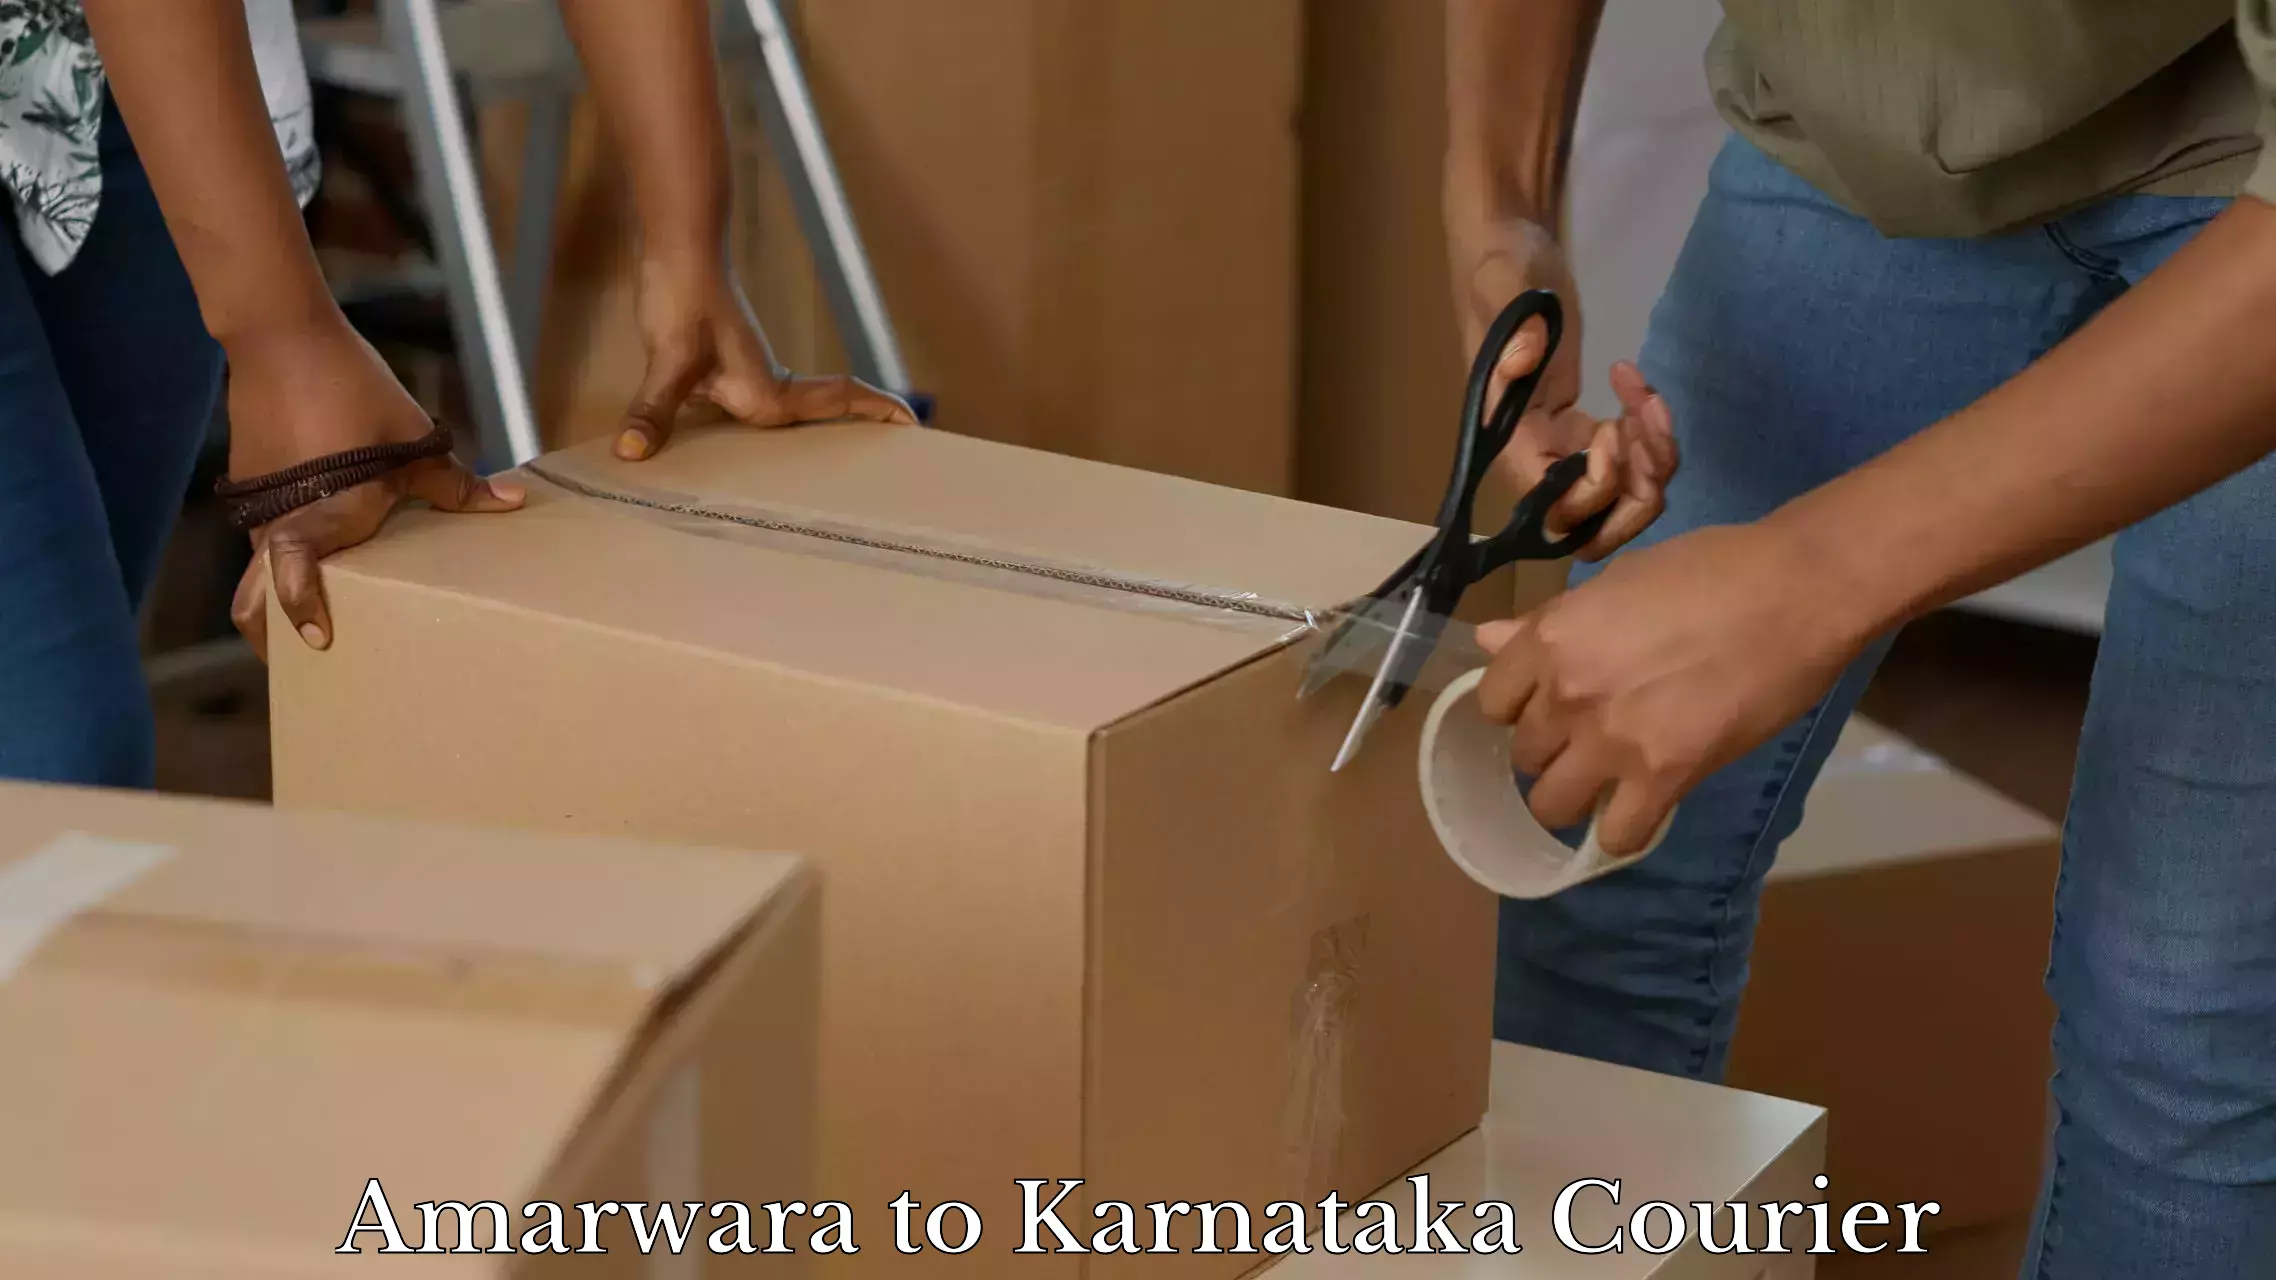 Luggage shipment specialists Amarwara to Kushalnagar